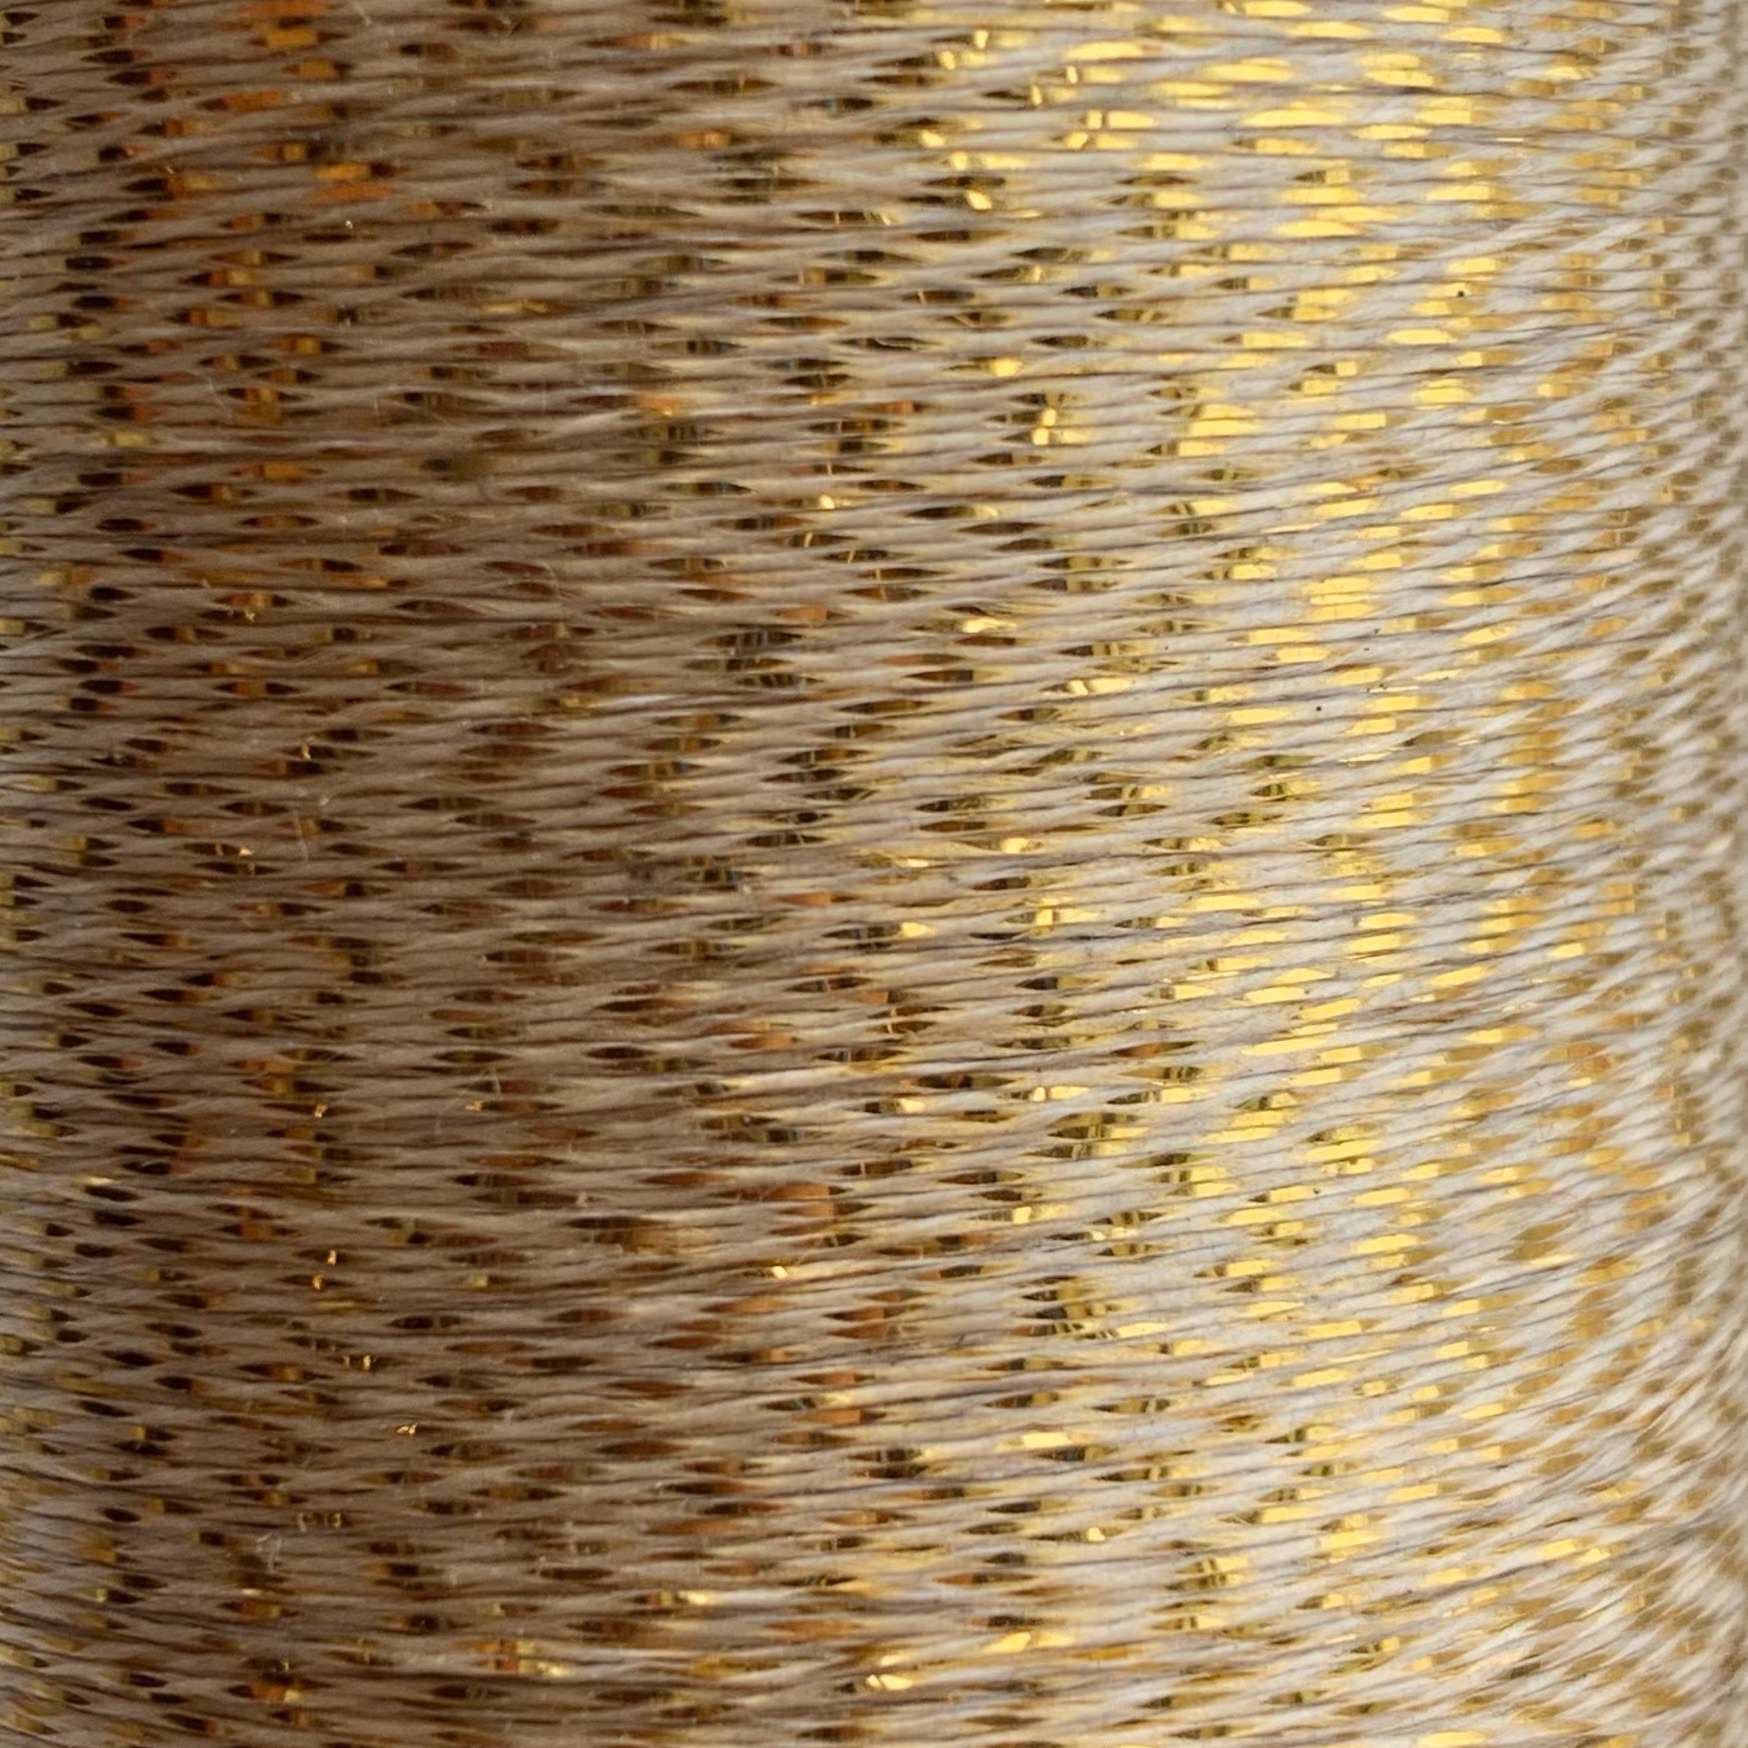 Silver & Gold Metallic Yarn Spools